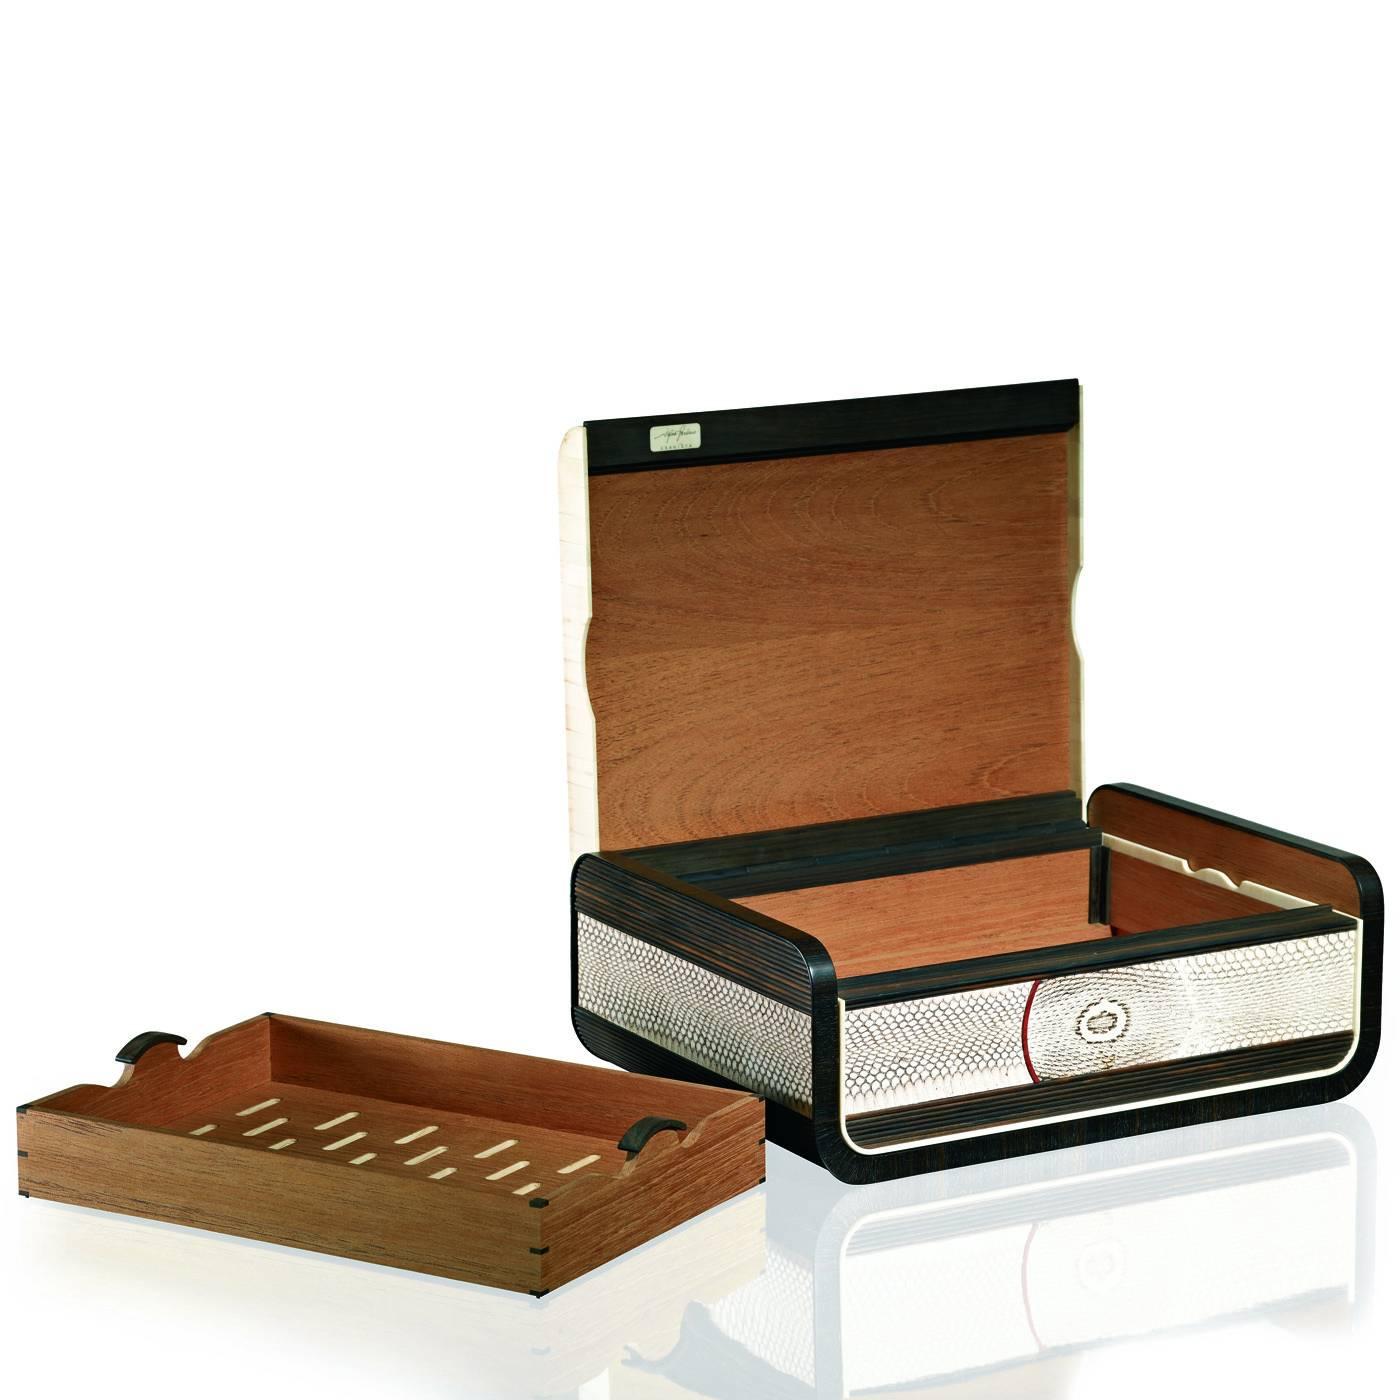 Diese elegante Zigarrenkiste aus Ebenholz-Makassar mit ihren charakteristischen dunkelbraunen Streifen ist rundherum mit Horn-Akzenten verziert. Der Deckel ist durch einen mit Leguanhaut verzierten Reißverschluss aus Ebenholz mit der Box verbunden.